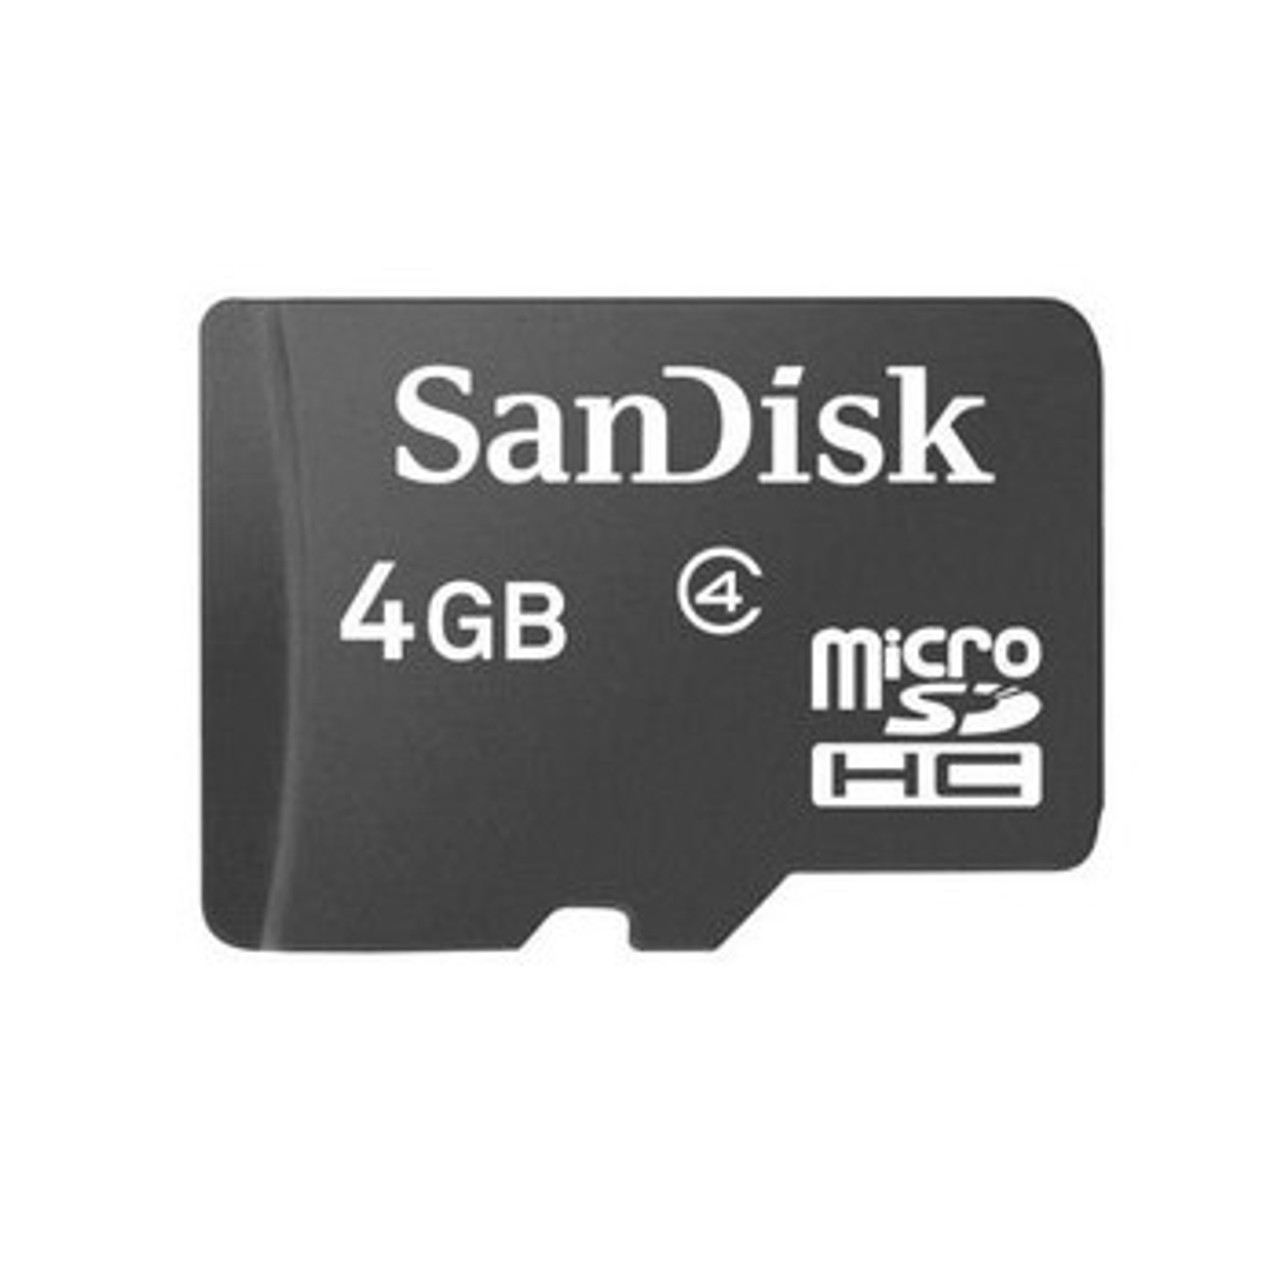 SAN4GBMICROSD | SANDISK | 4Gb Class 4 MICROsd Flash Memory Card